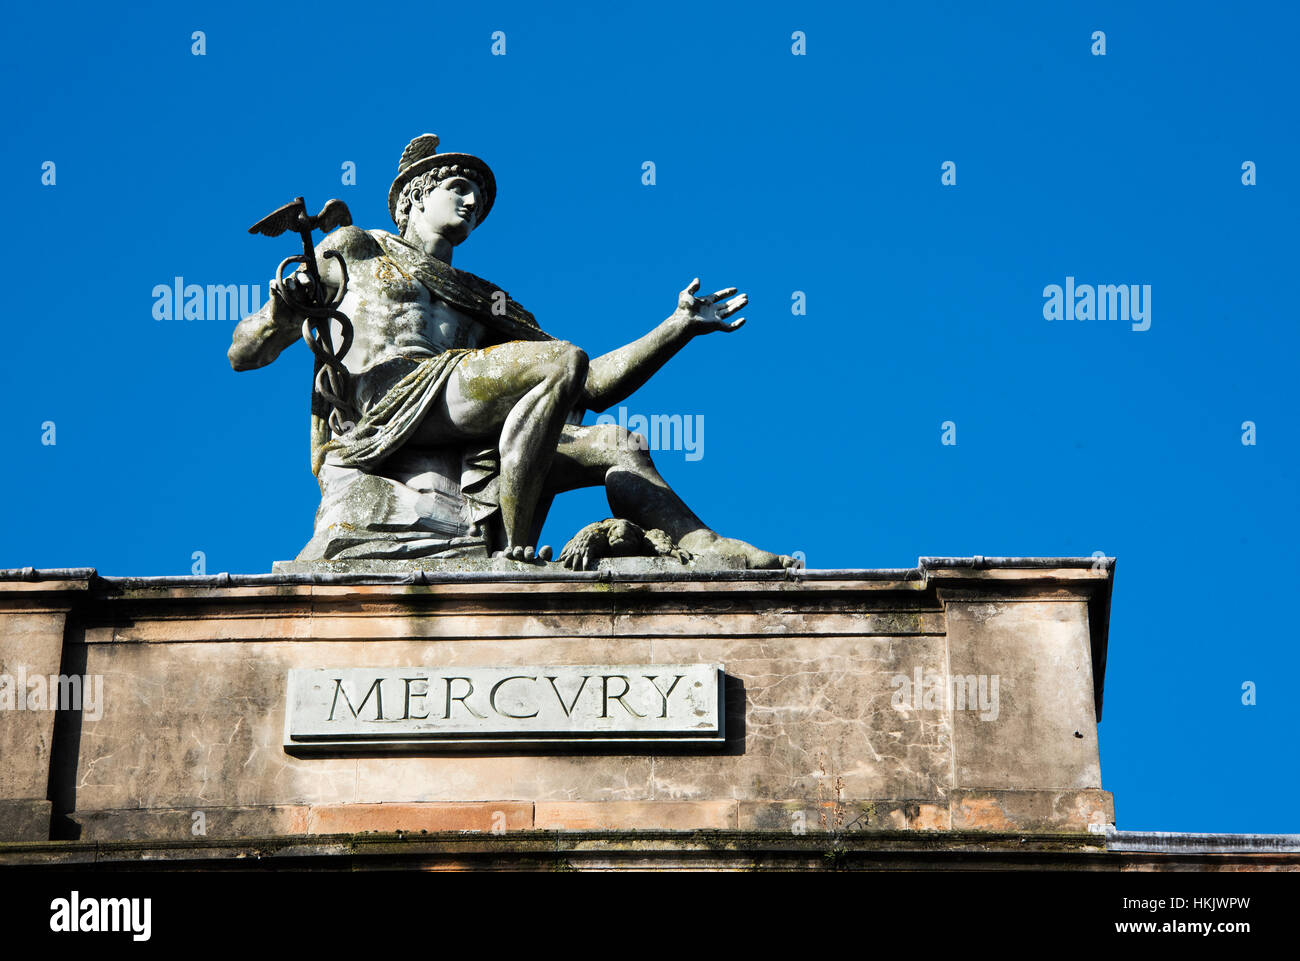 La scultura/ Statua di Mercurio, dio romano sul tetto del Centro Italiano di Glasgow, Scozia Foto Stock